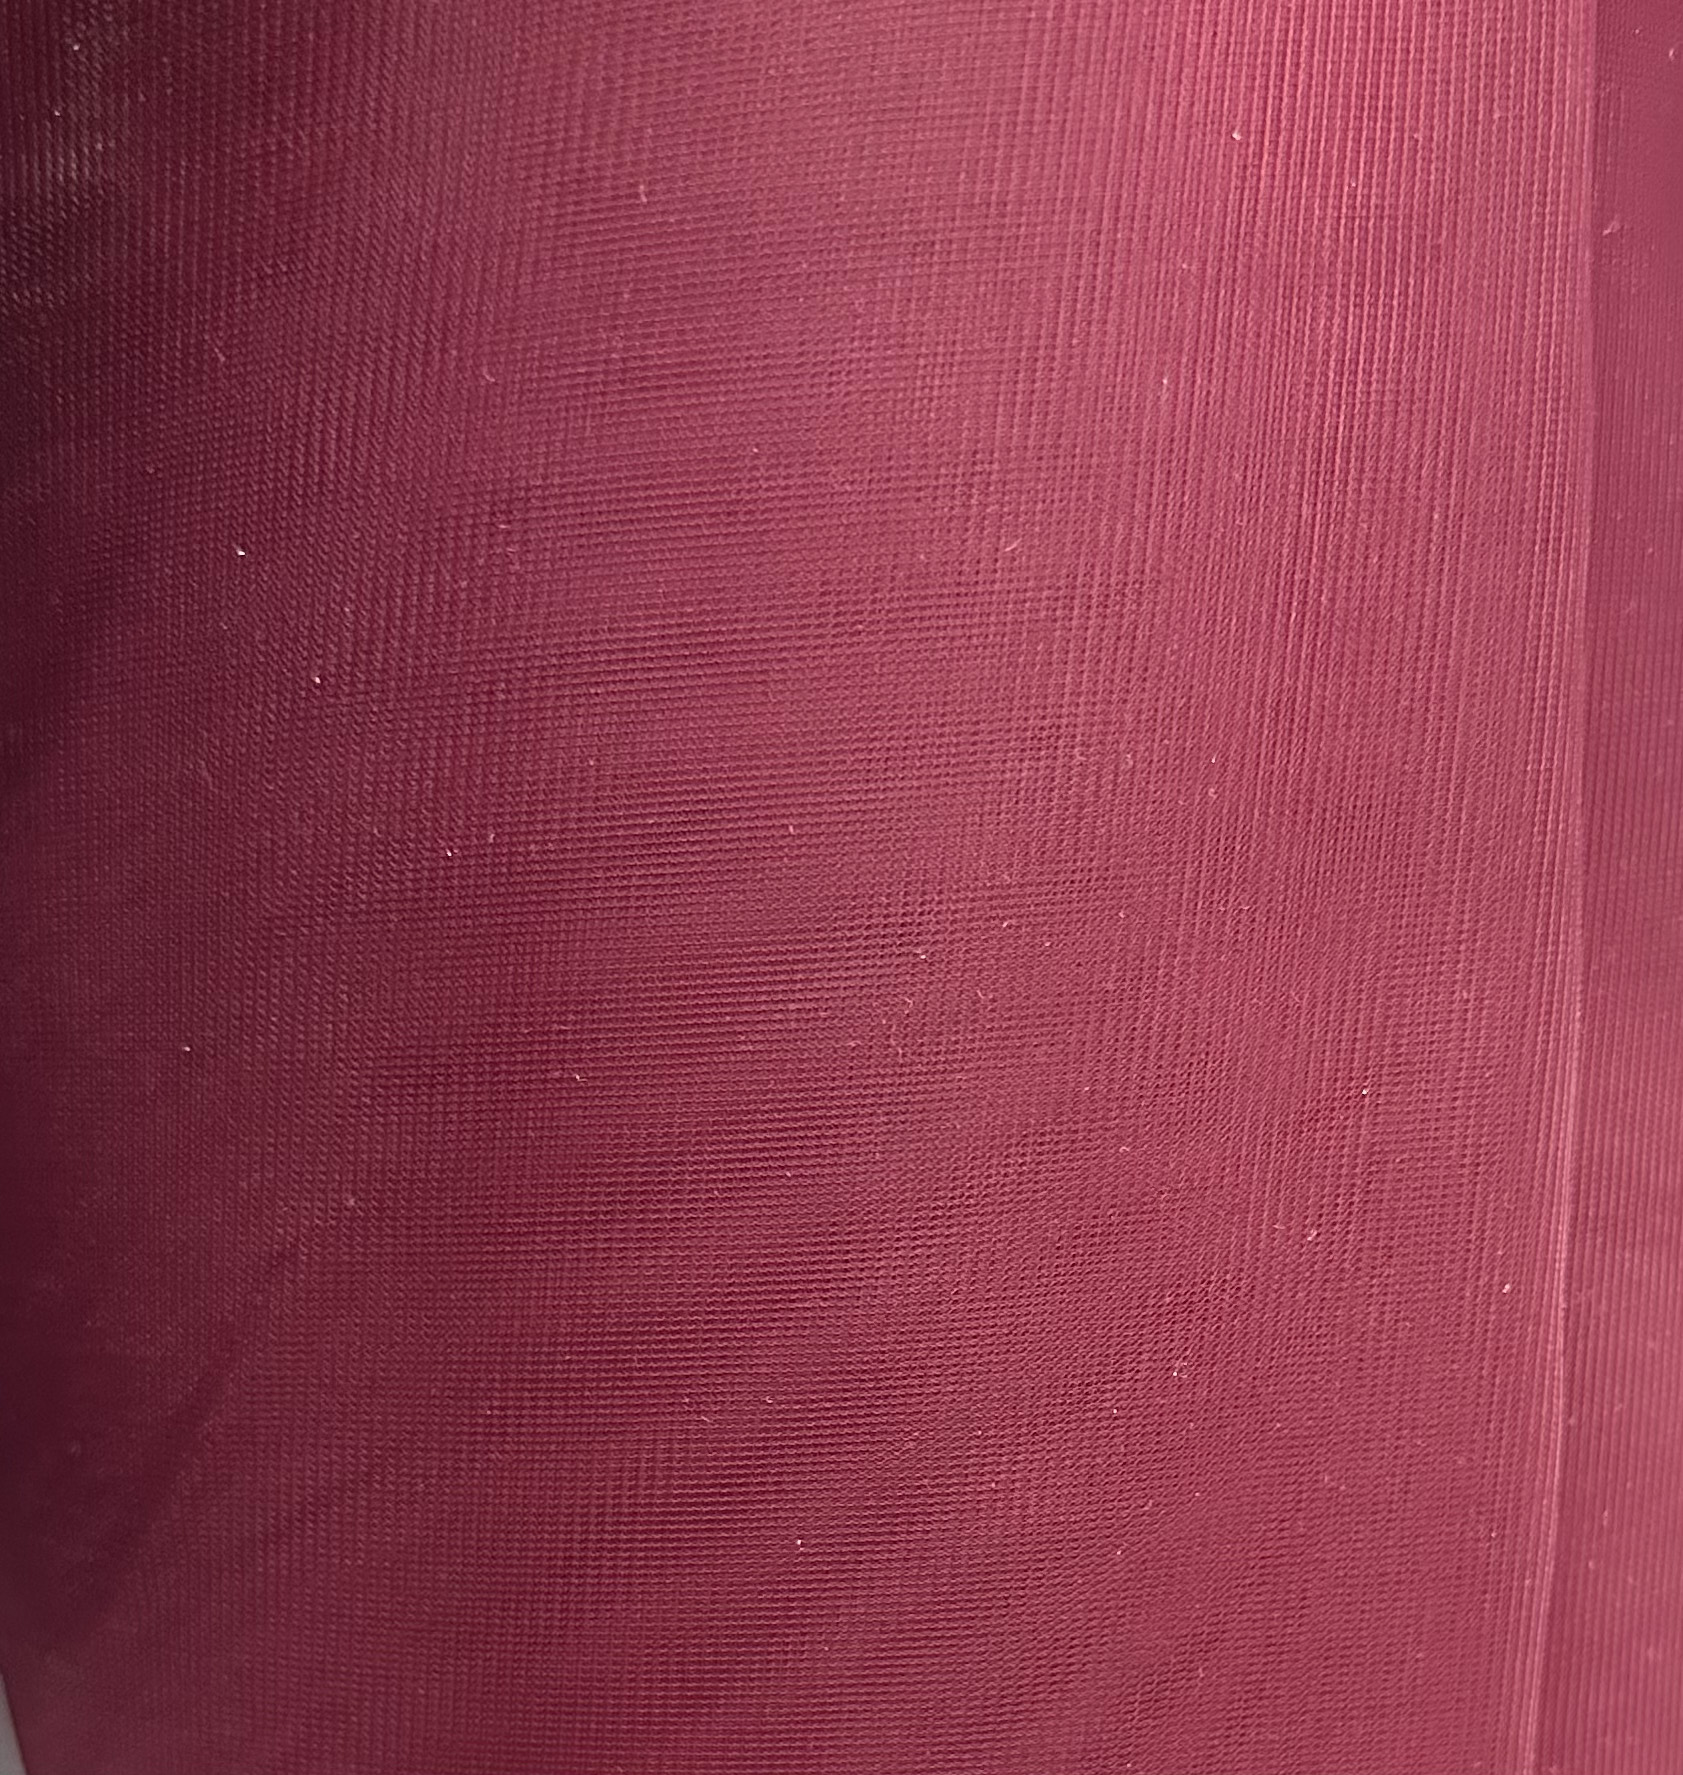 Wine Nylon Chiffon Fabric